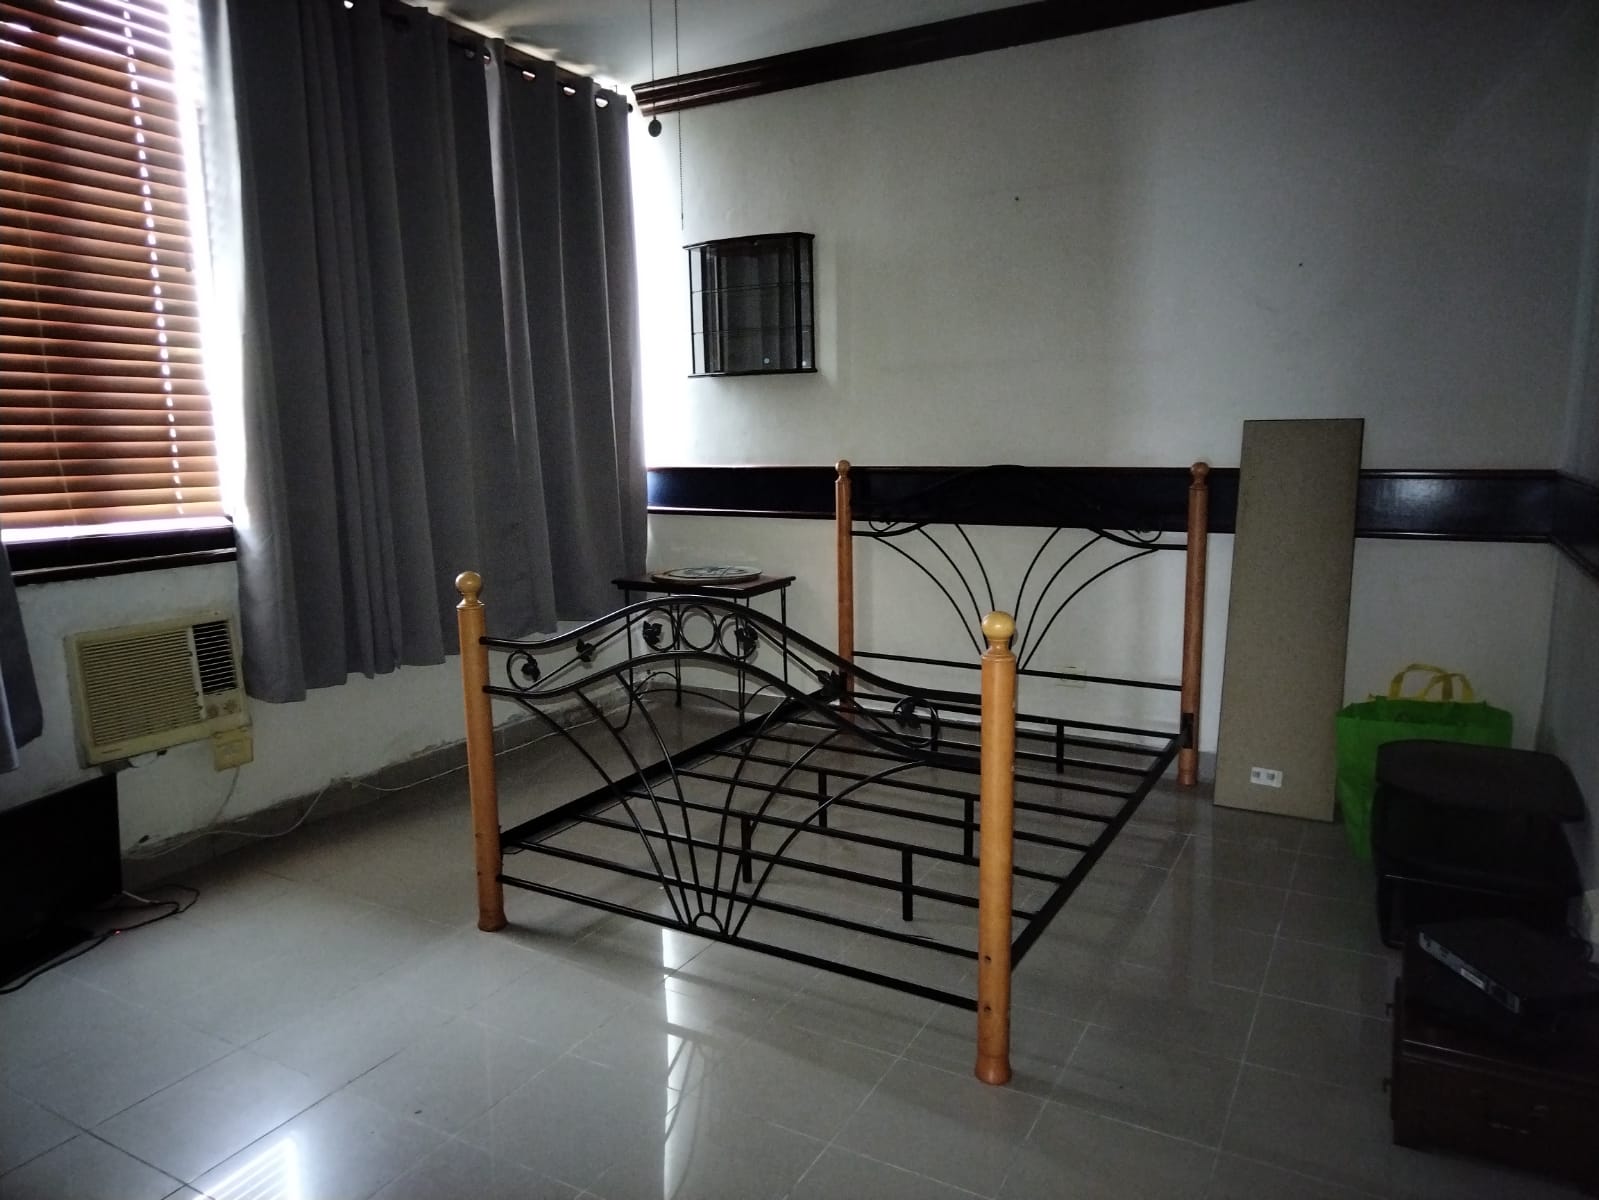 Venta de apartamento de 4 recamaras, 4 baños, ubicado en Bella Vista Panamá